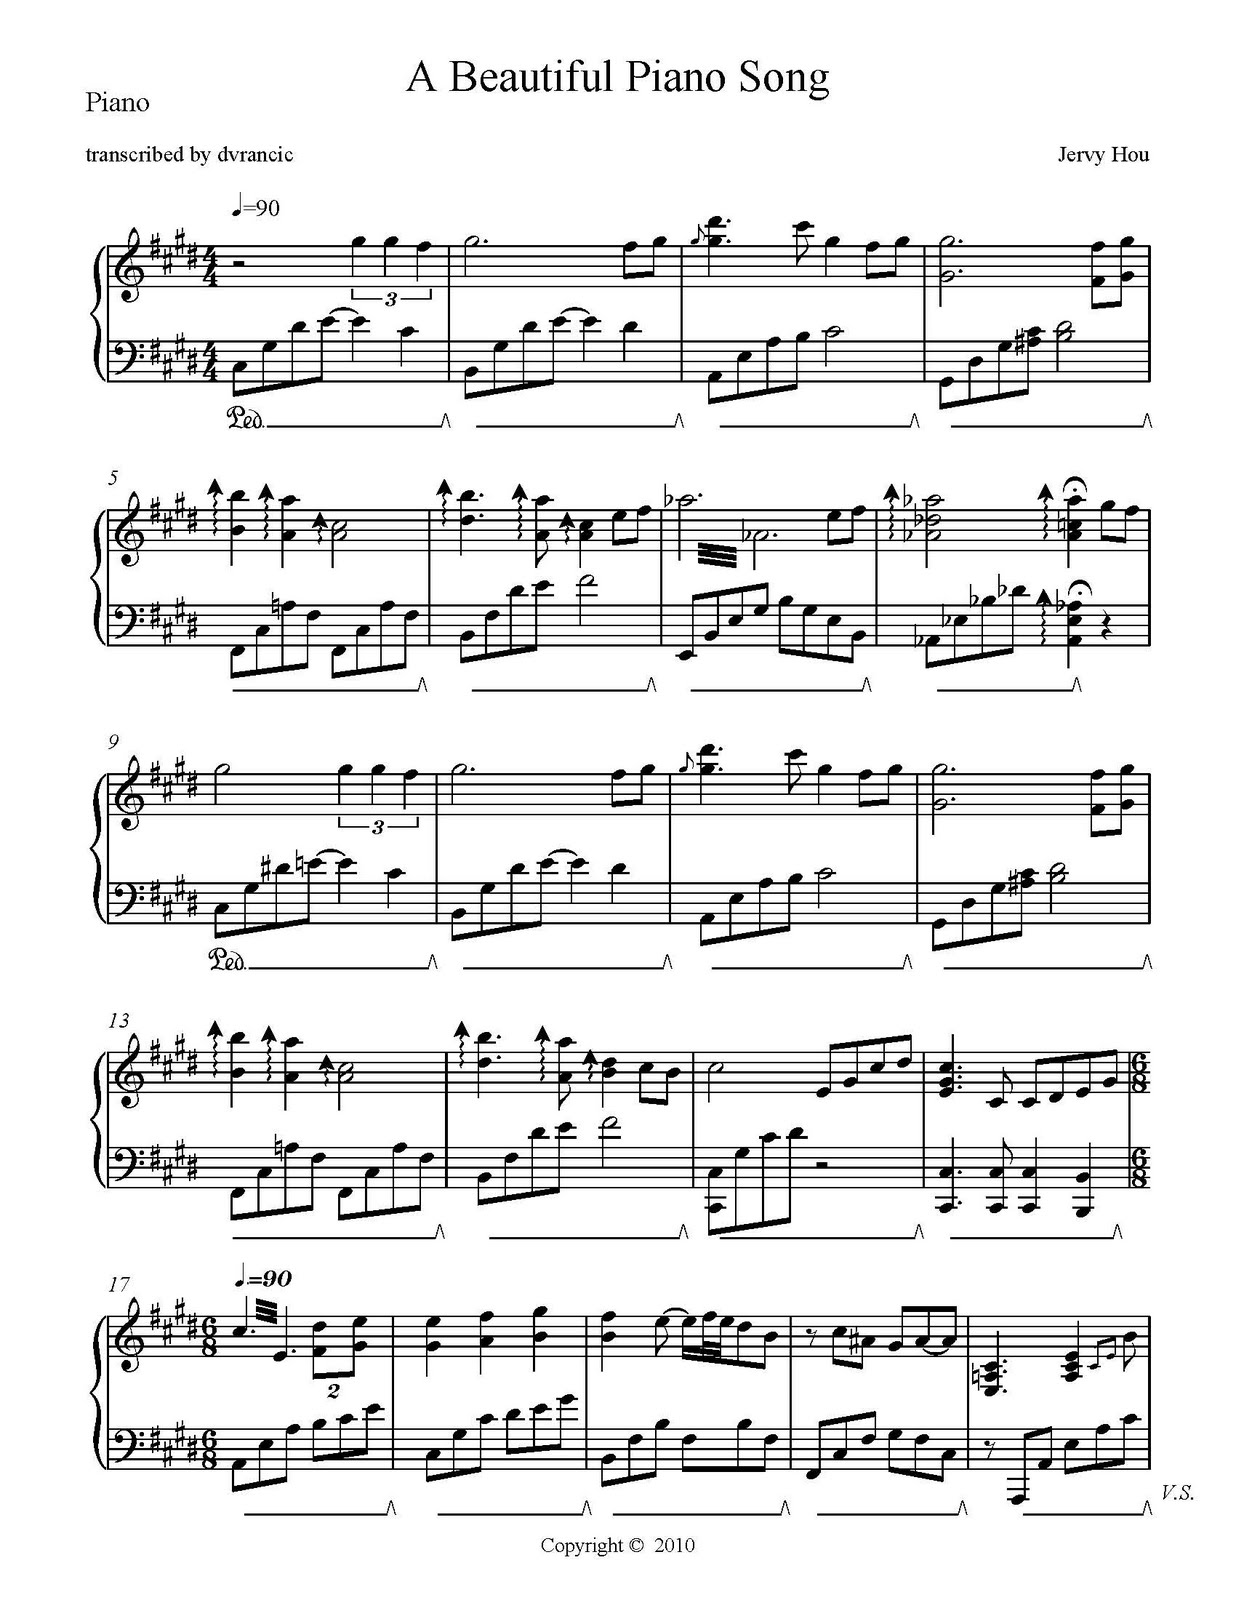 Beautiful Piano Song - Free Sheet Music: A Beautiful Piano Song - Free